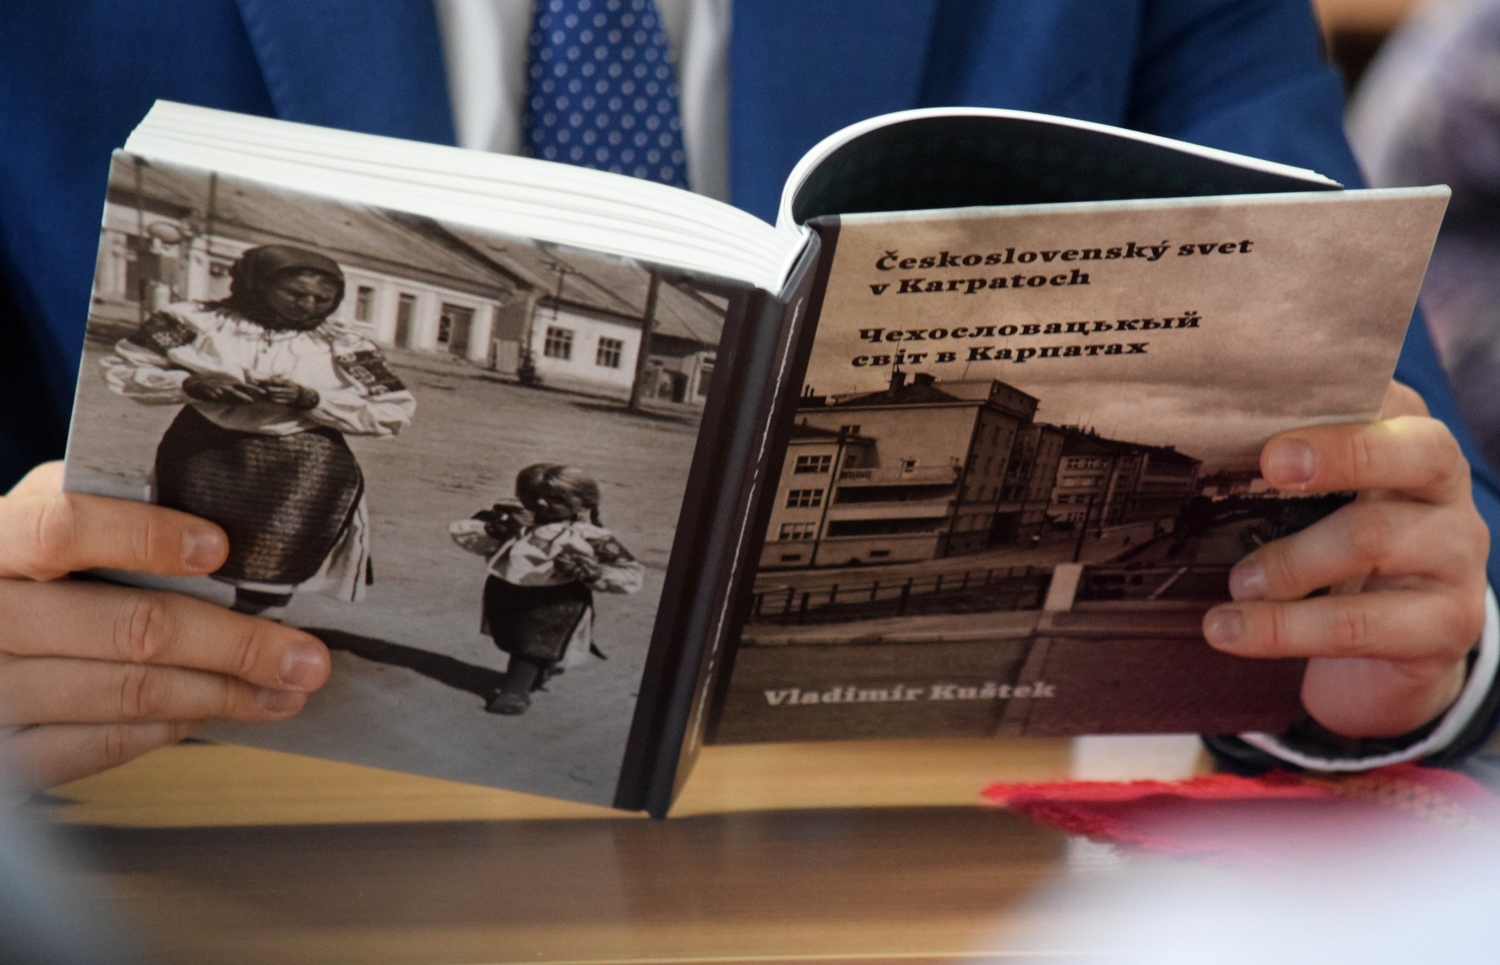 В Ужгороді презентували "Чехословацький світ у Карпатах" Владіміра Куштека (ФОТО)